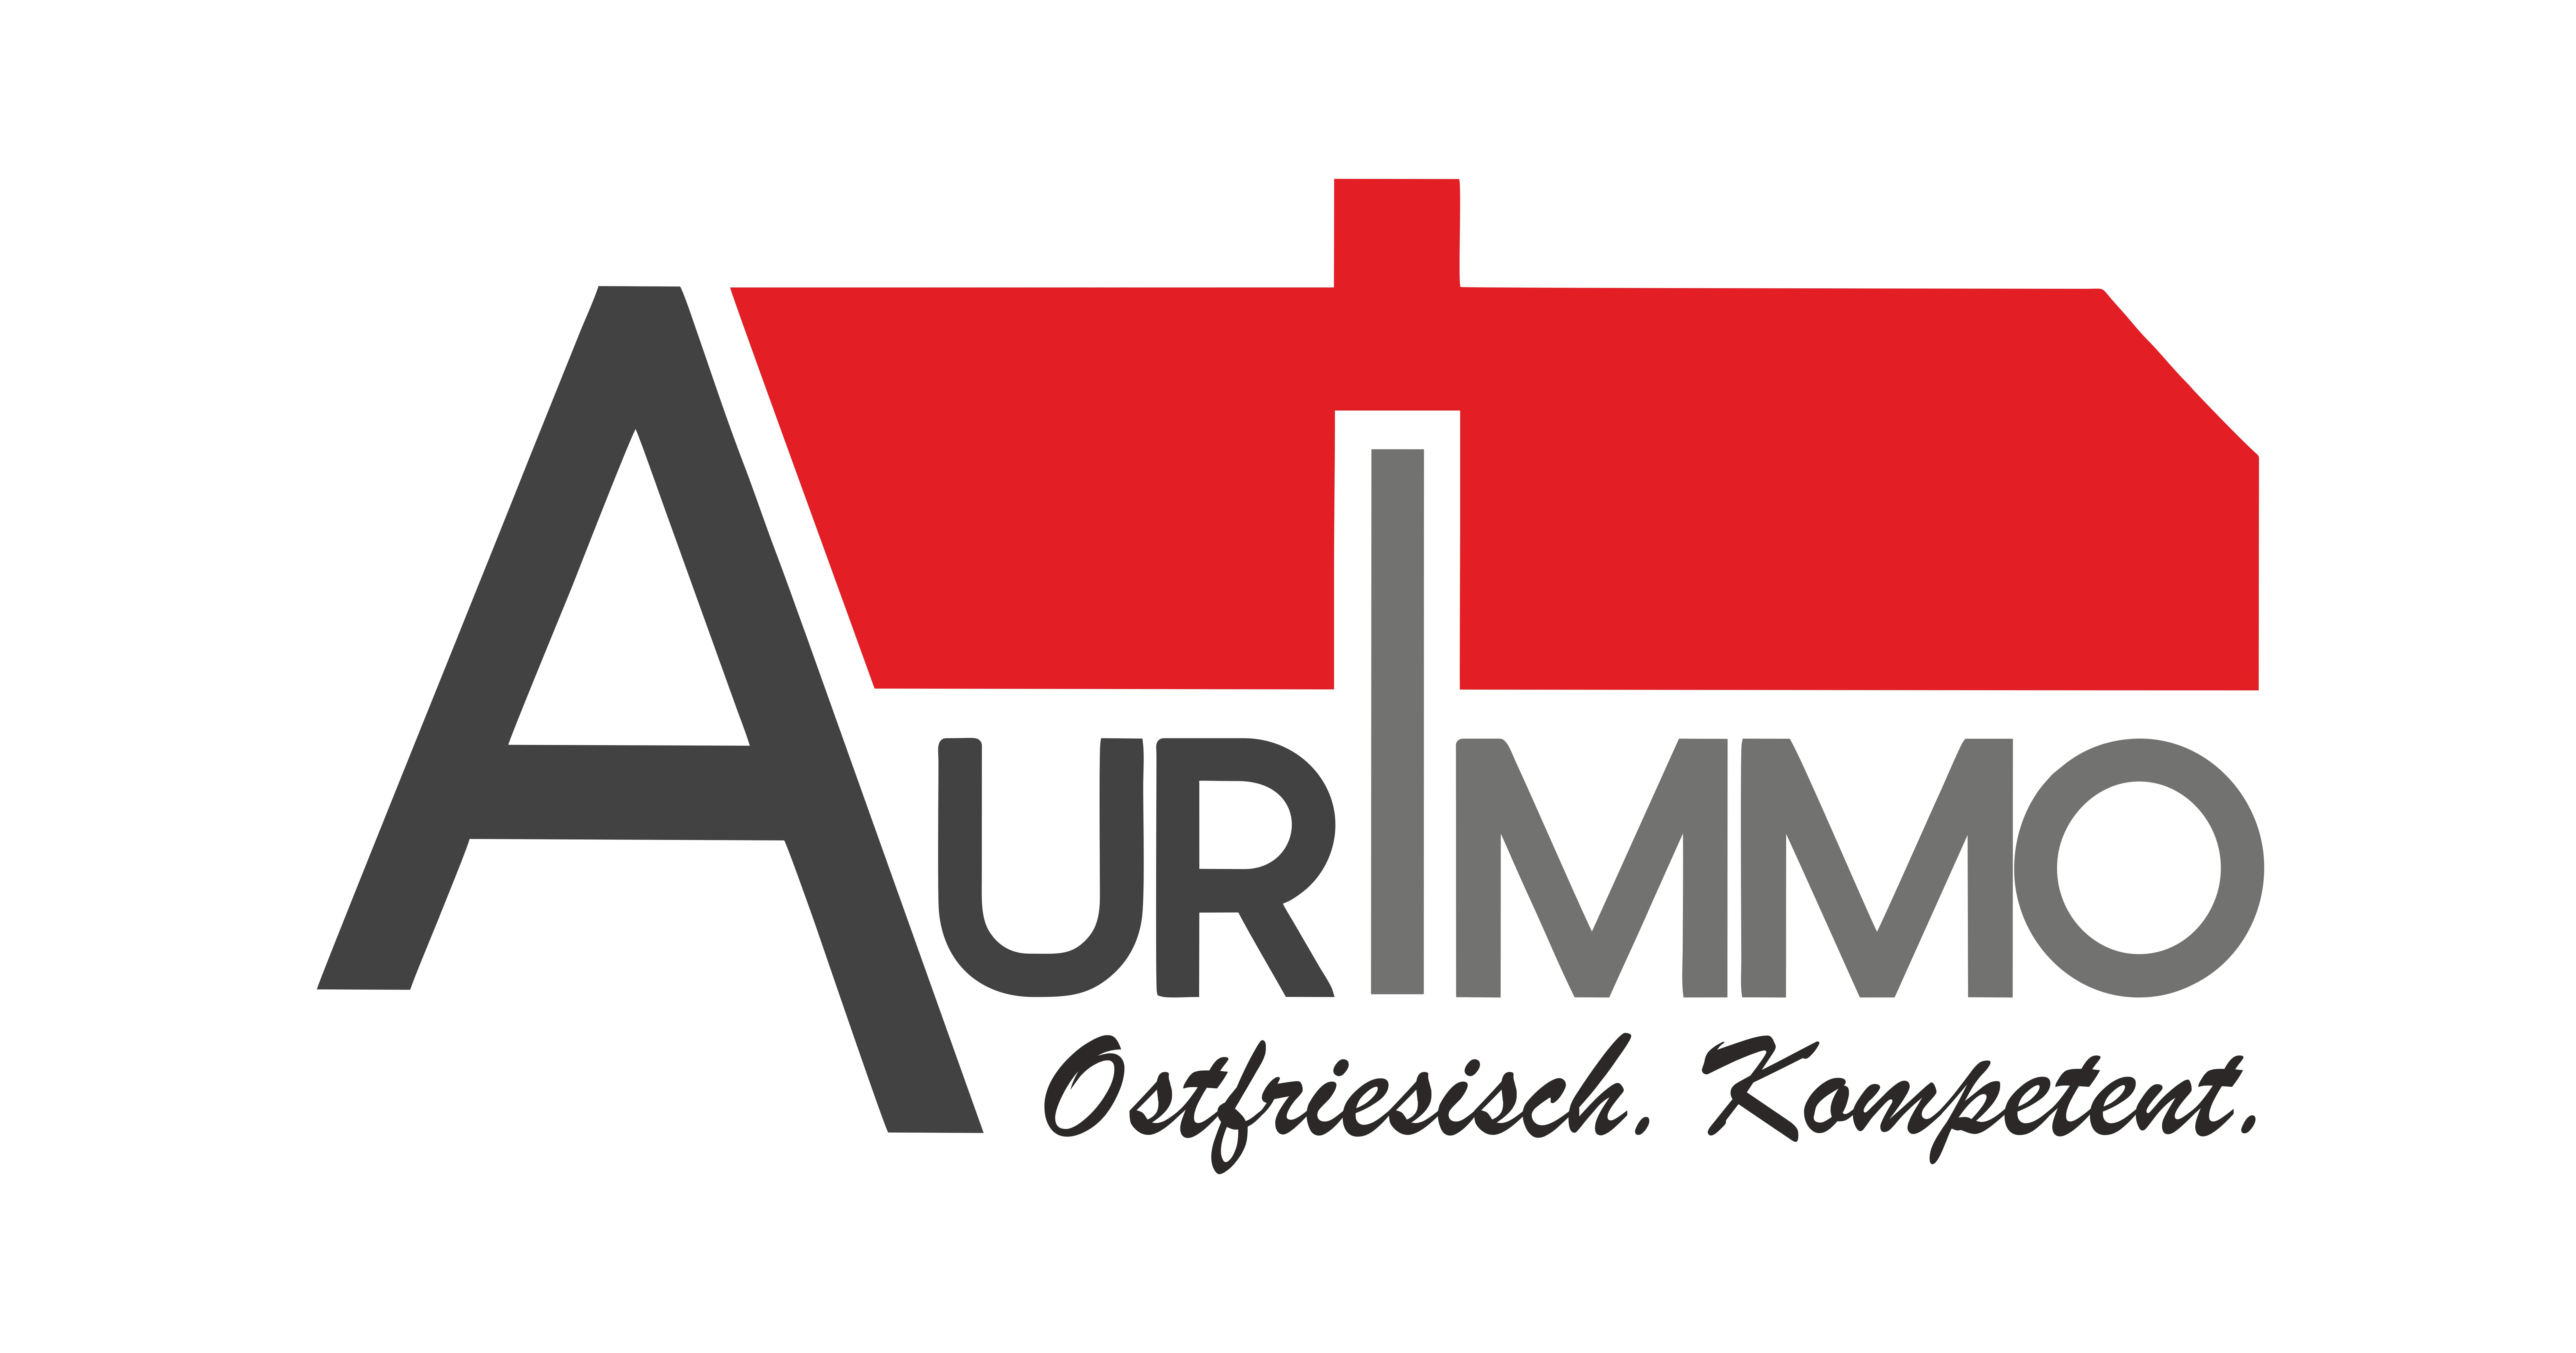 Das Logo von AurImmo, Ihrem erfahrenen Immobilienmakler-Team in Aurich, Ostfriesland. Wir sind spezialisiert auf das Thema Wohnen im Alter und bieten professionelle Dienstleistungen rund um Immobilien.